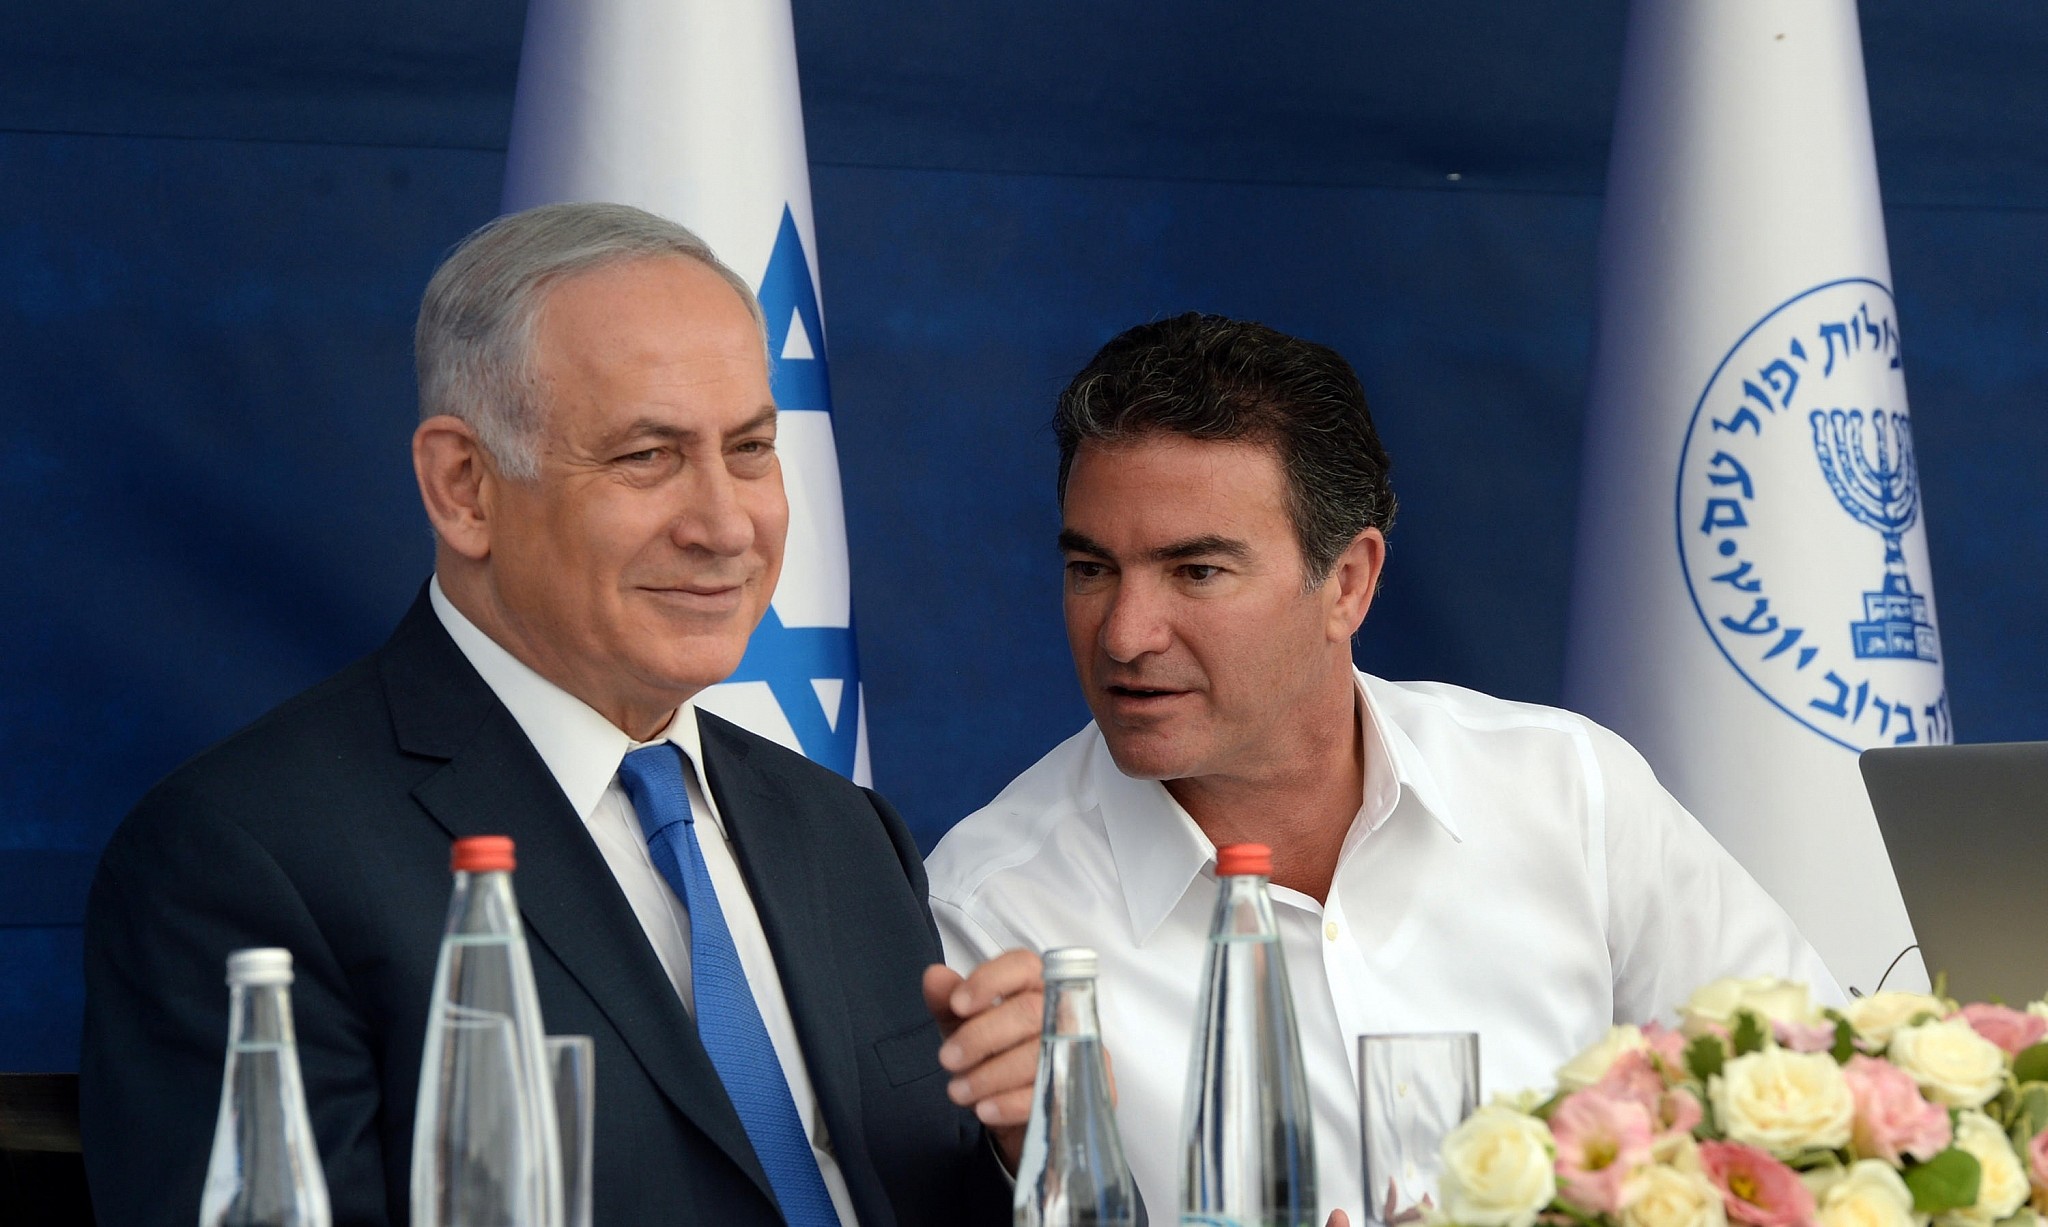 La campagna di disinformazione di Bibi e le pressioni stile mafia sulla Corte penale